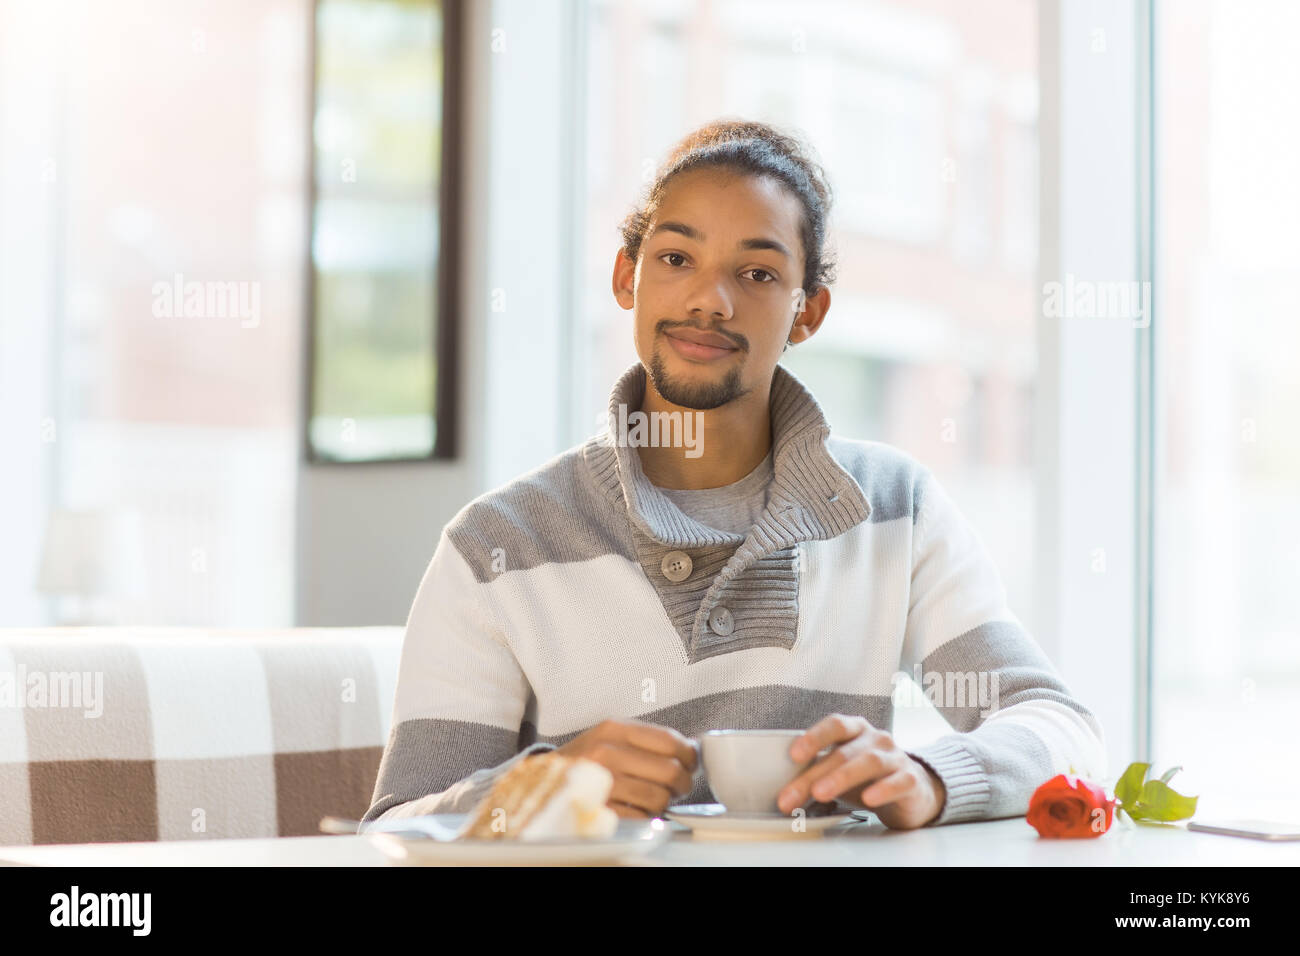 Guy in cafe Stock Photo